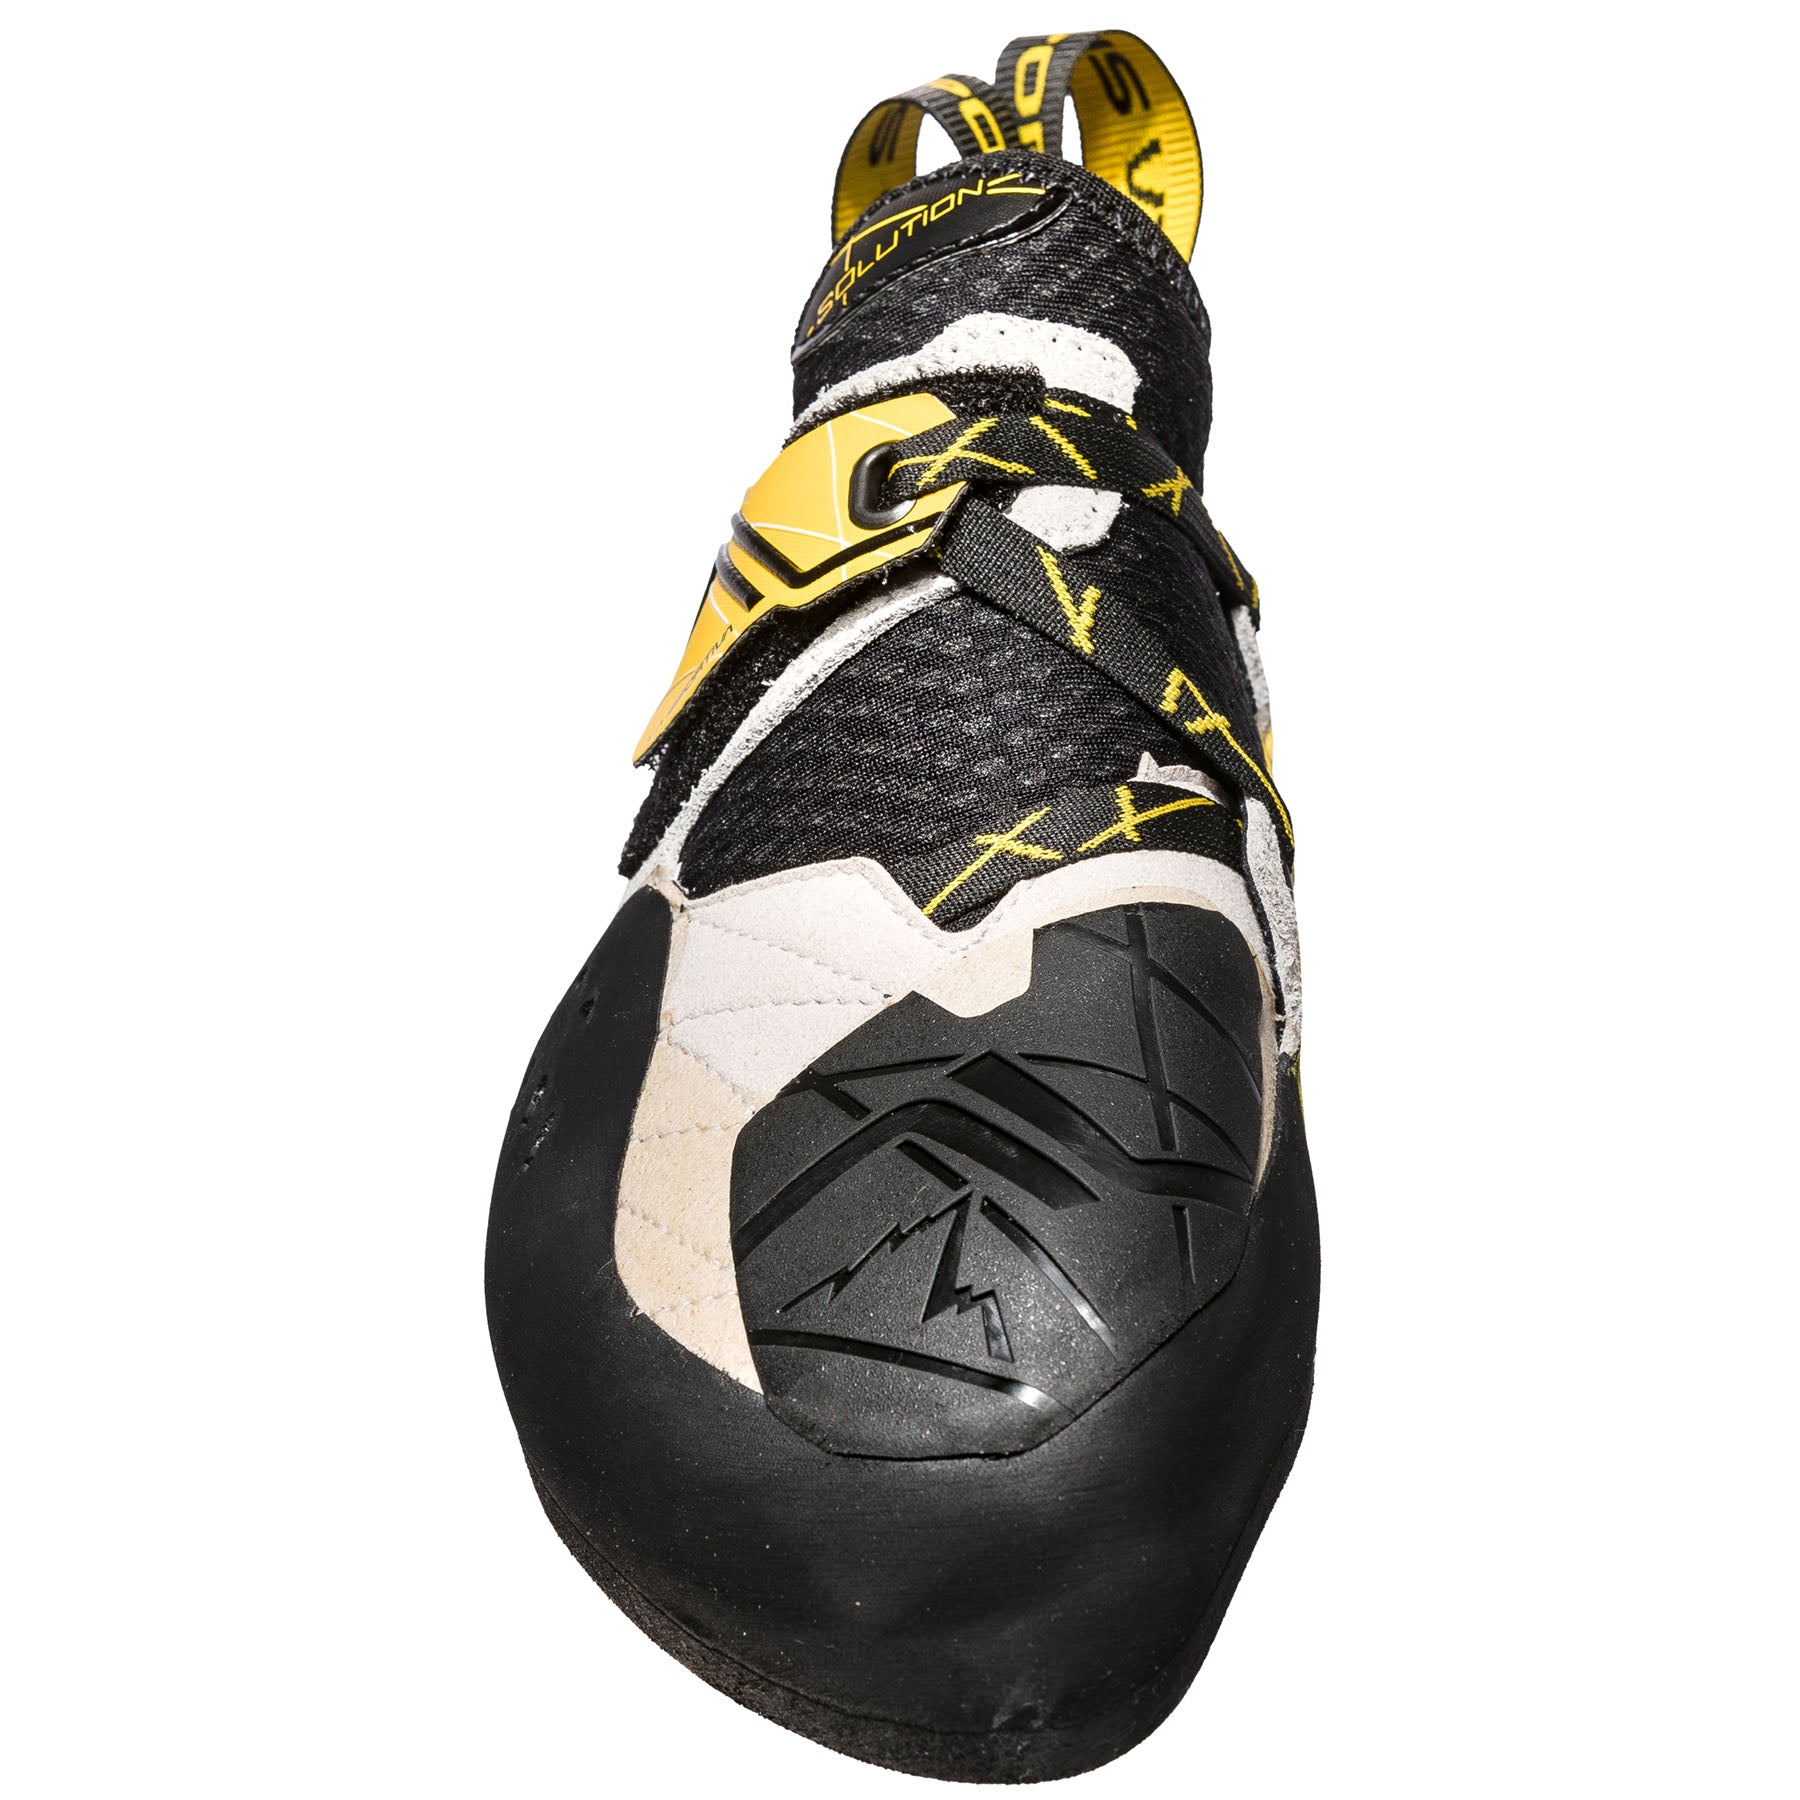 la sportiva mens solution rock shoe, front view